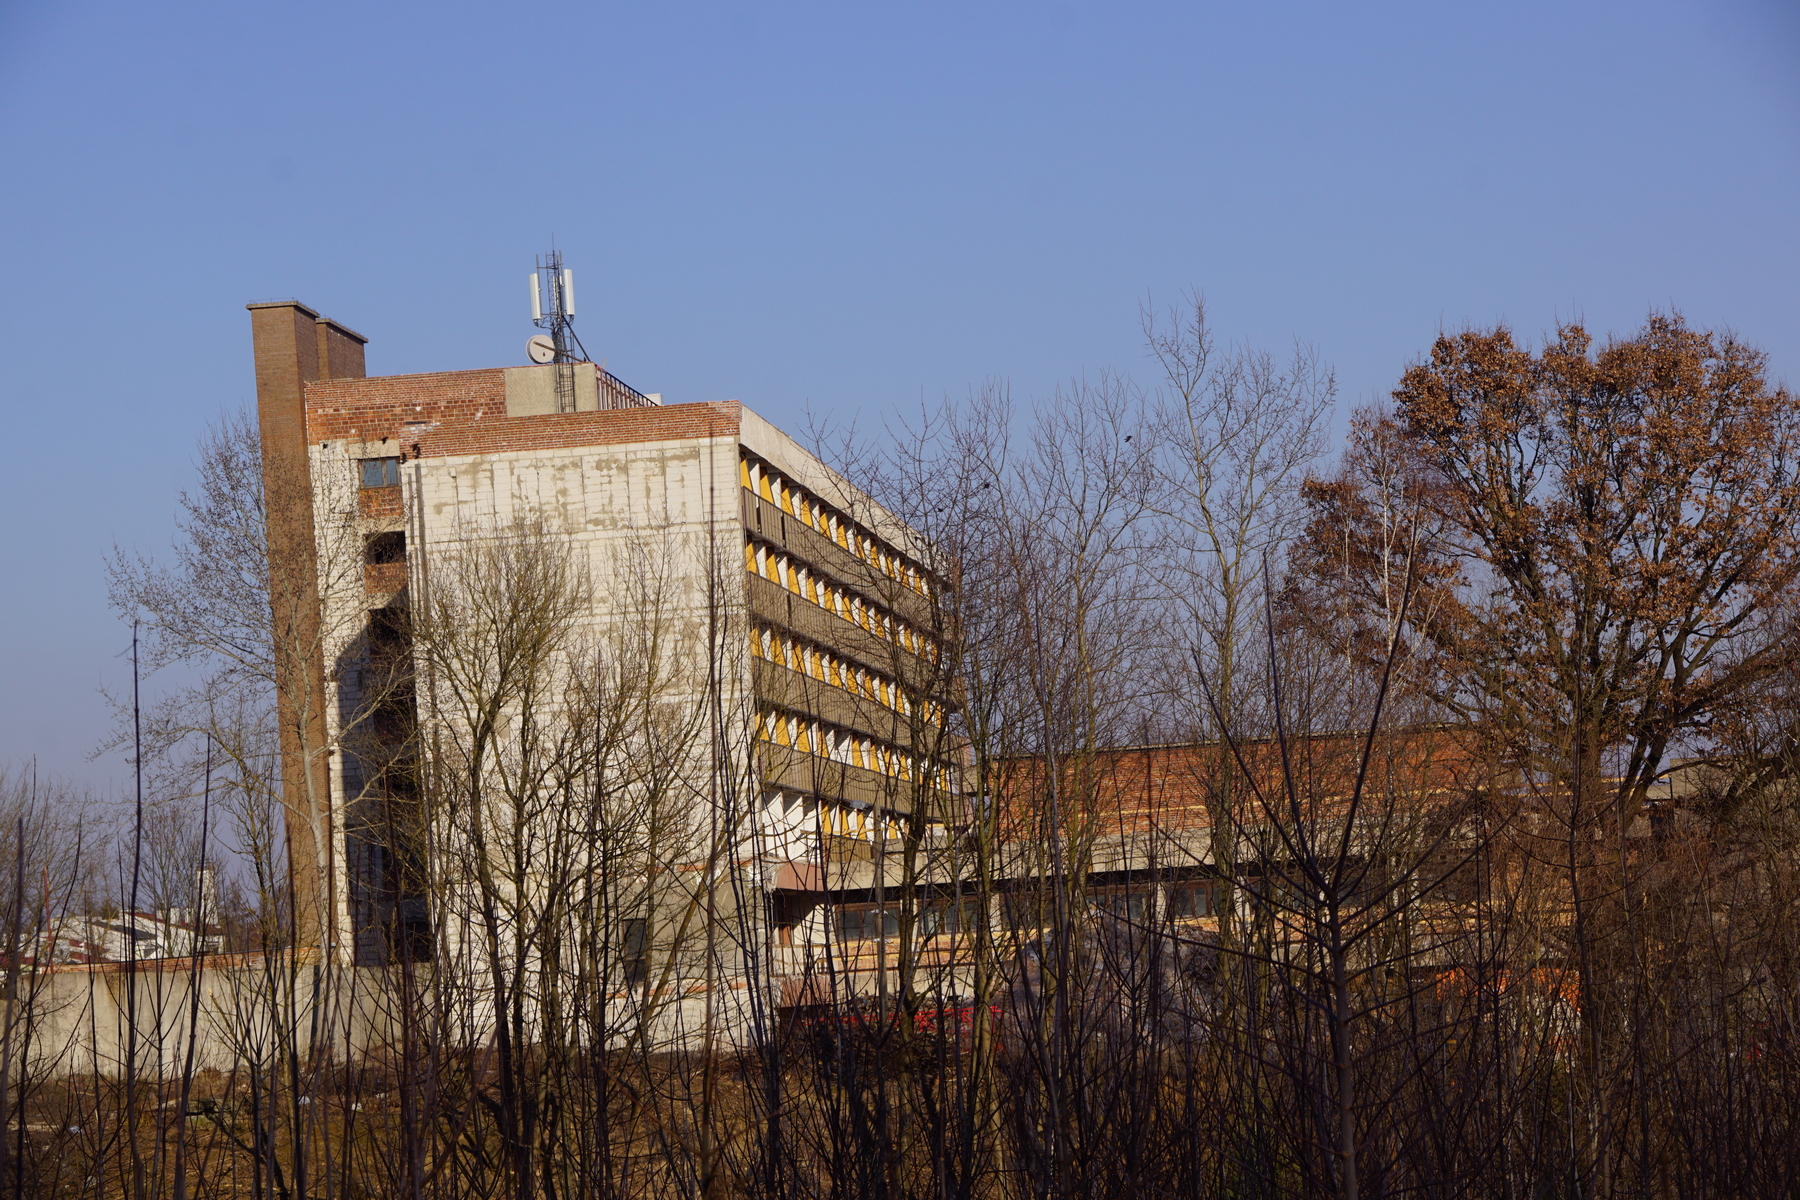 Ma 300 pokoi i od 30 lat stoi pusty. Niedokończony budynek sanatorium zmienia się w hotel (zdjęcia)